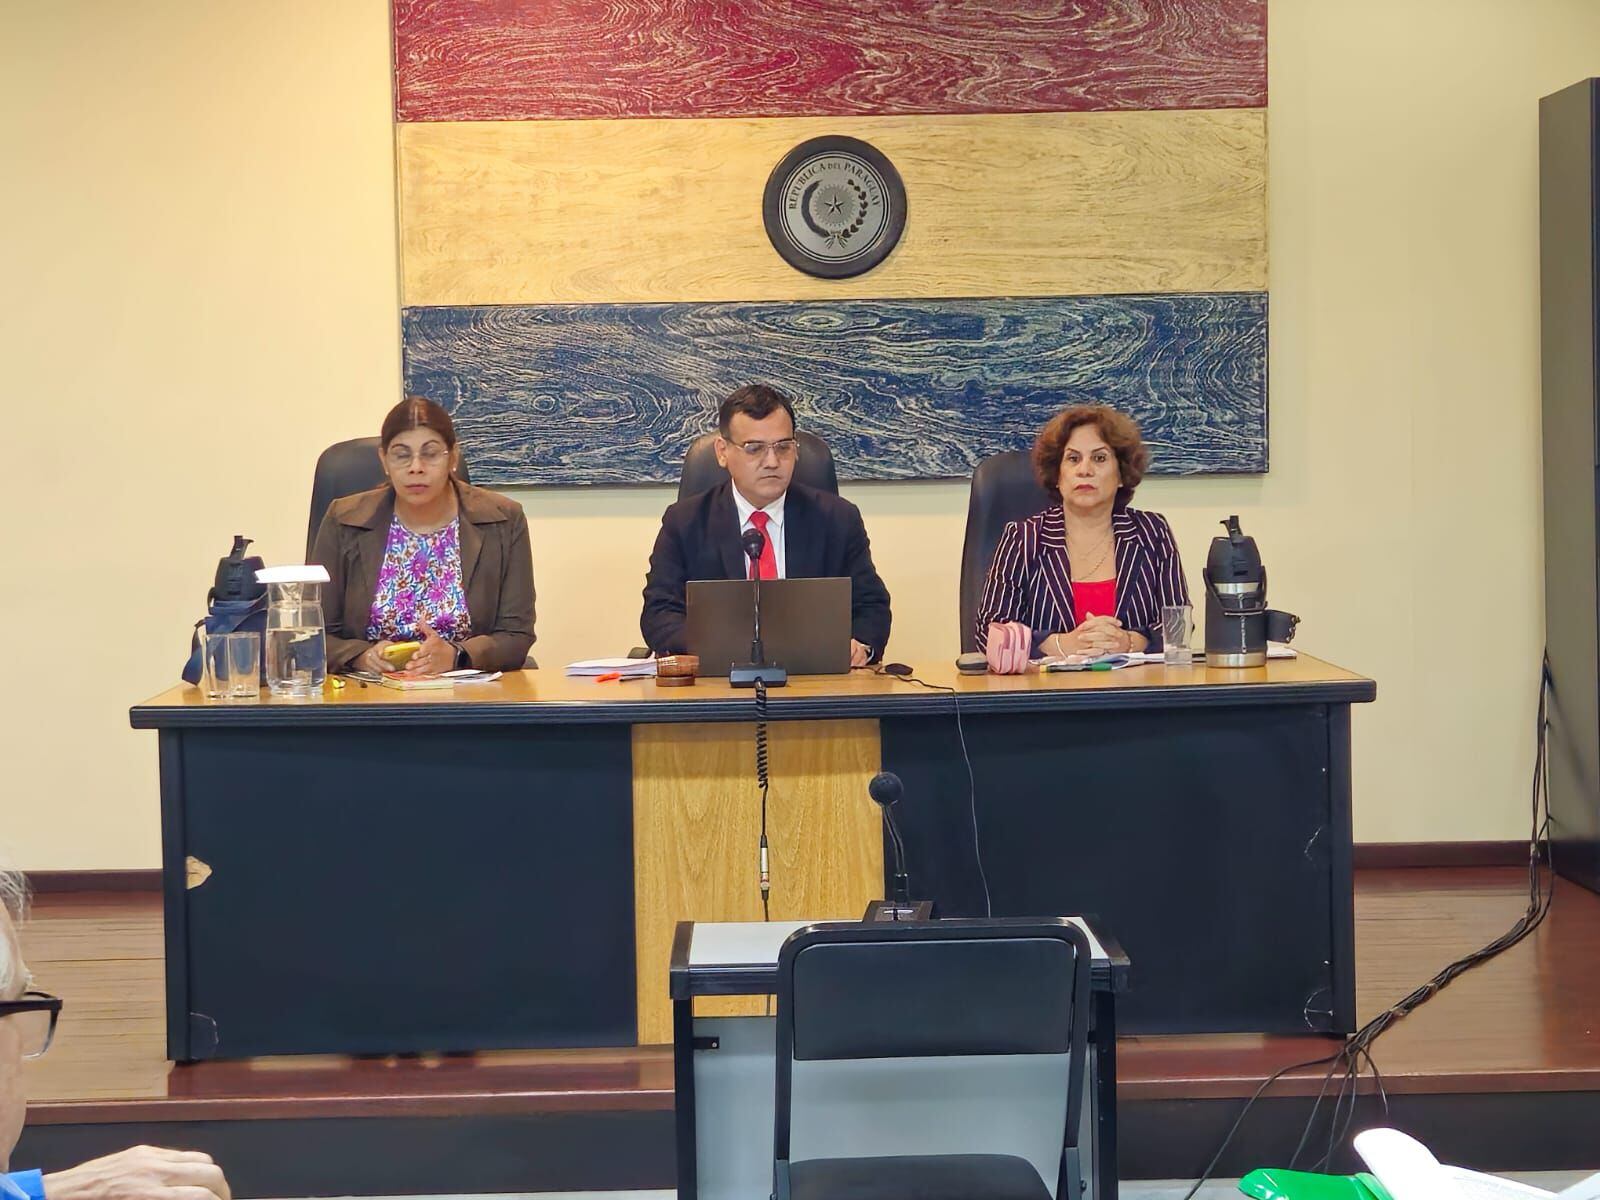 Jueces Cándida Fleitas, Fabián Weisensee y Laura Ocampos, miembros del tribunal de sentencia. 